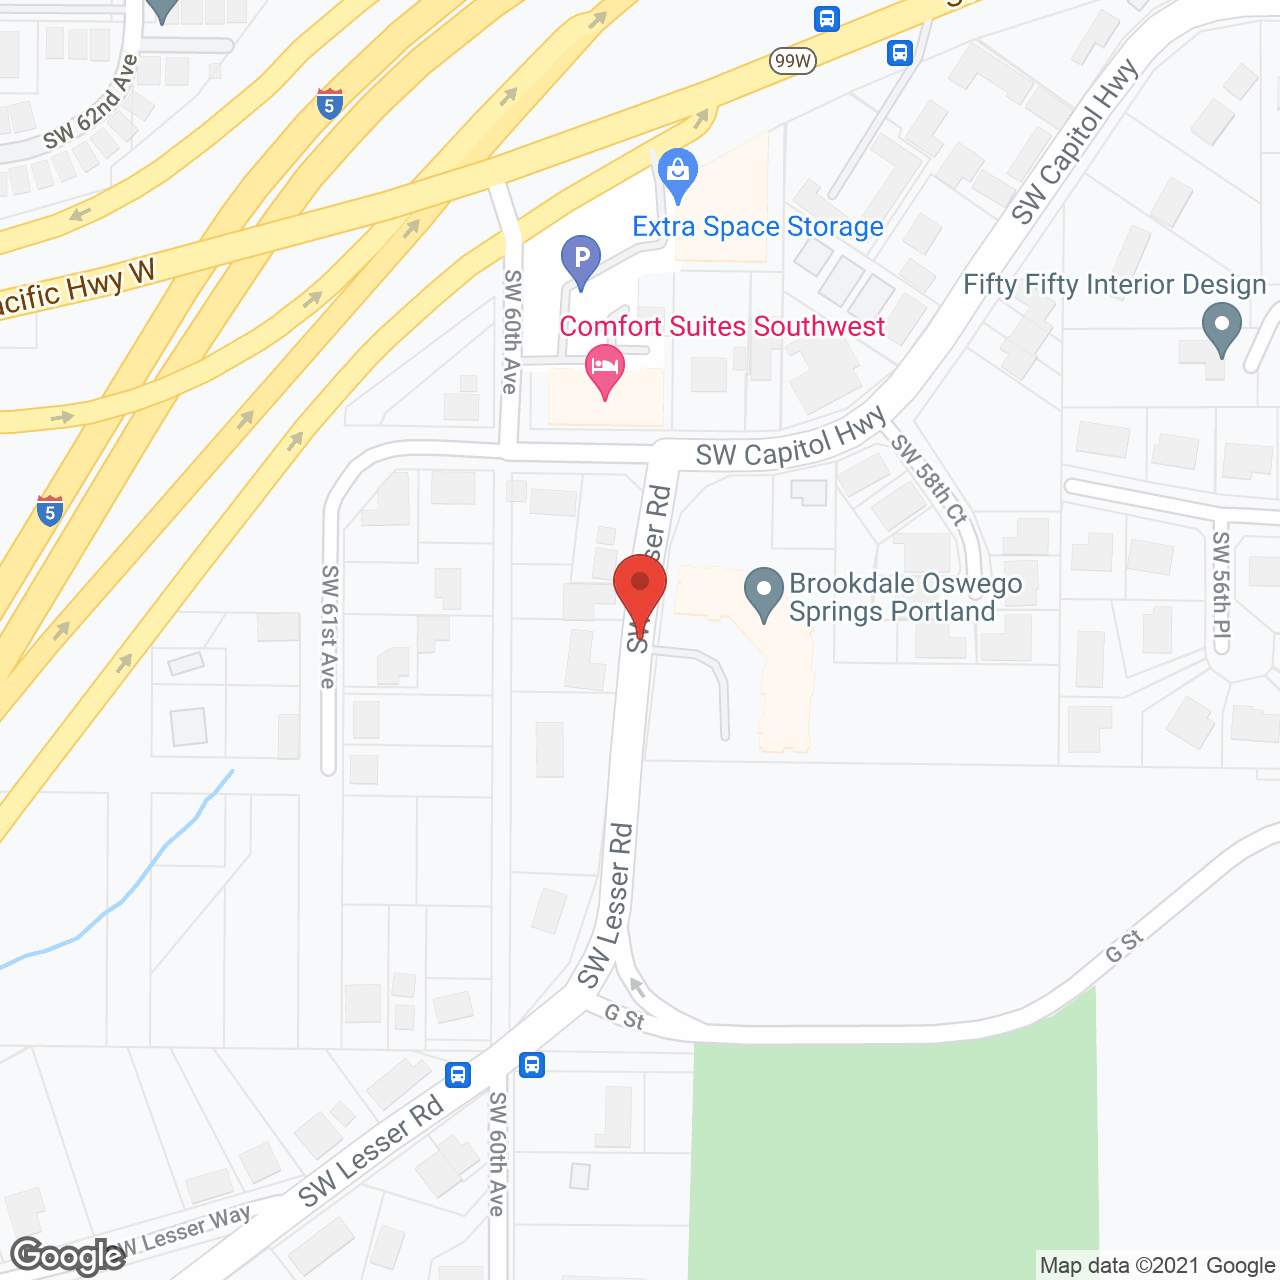 Brookdale Oswego Springs Portland in google map